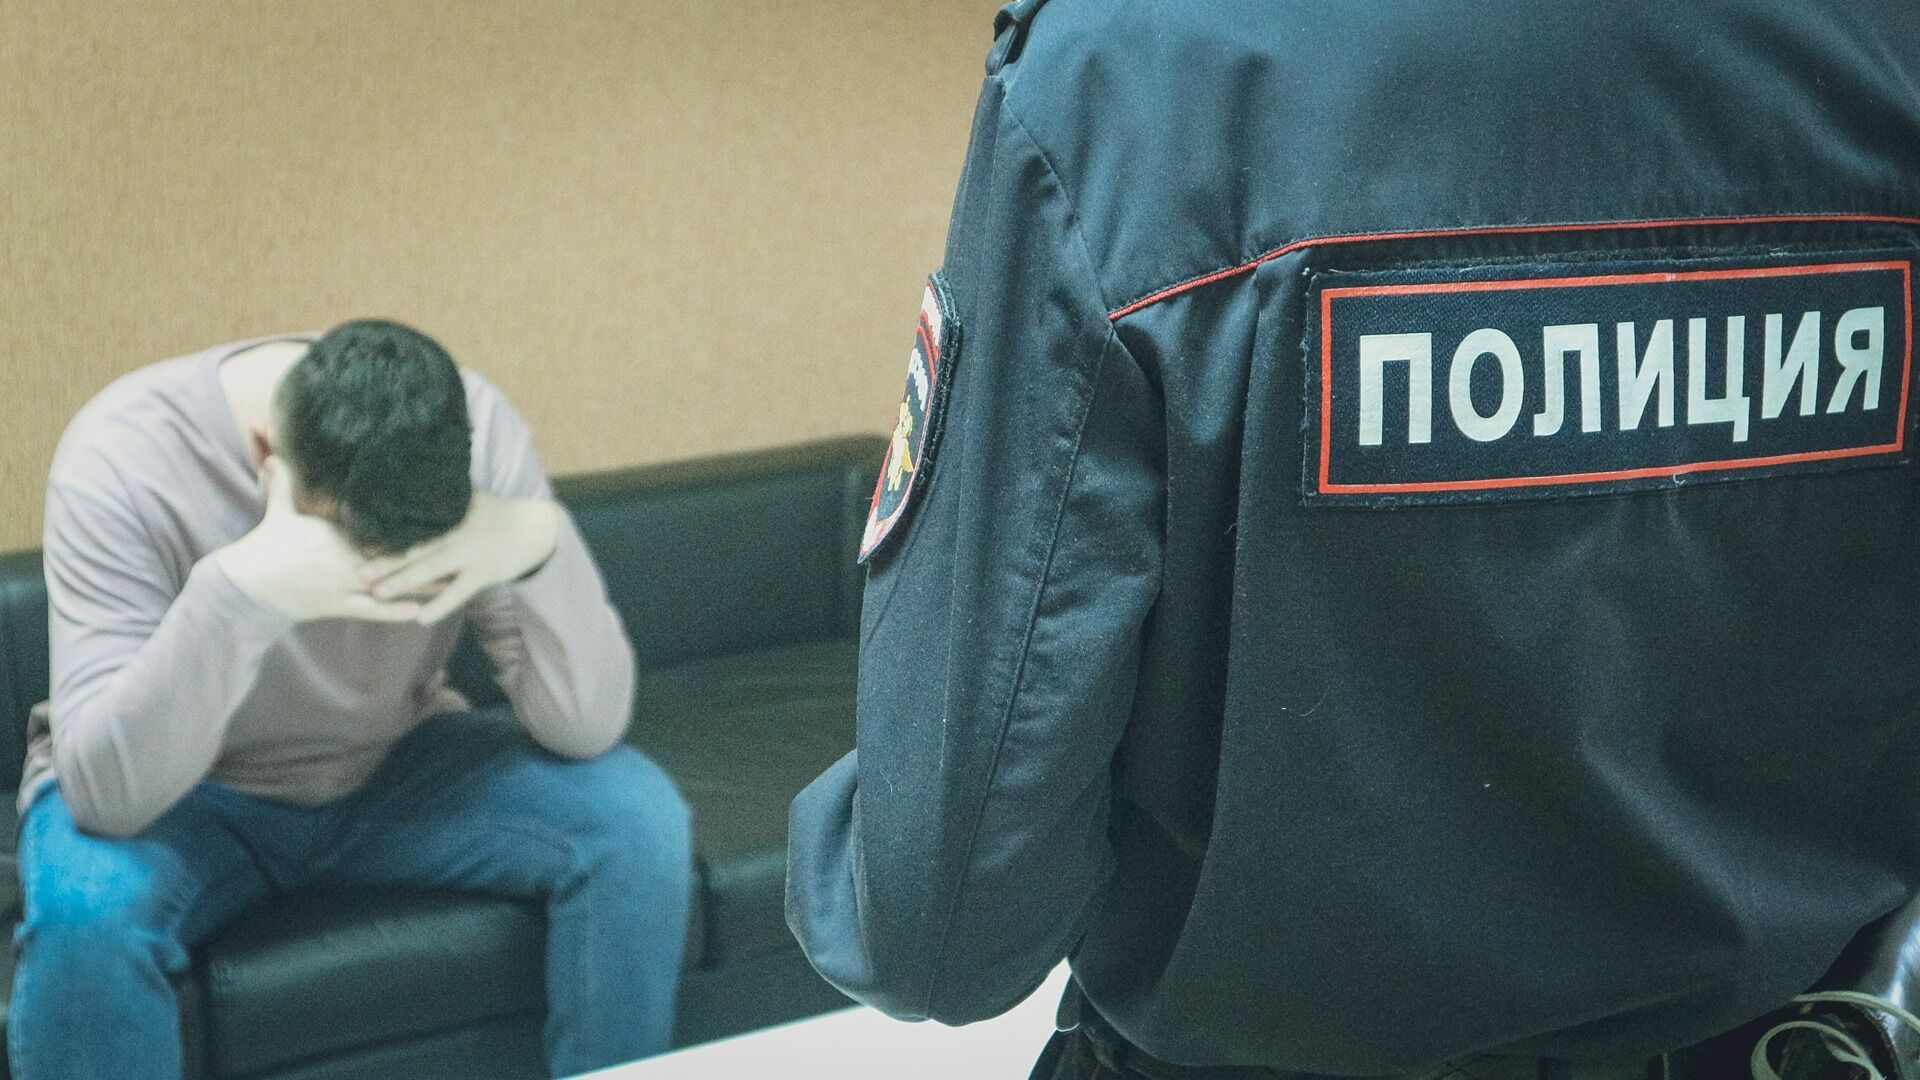 Скрывшийся водитель после наезда на ребенка в селе Ребровка Омского района задержан